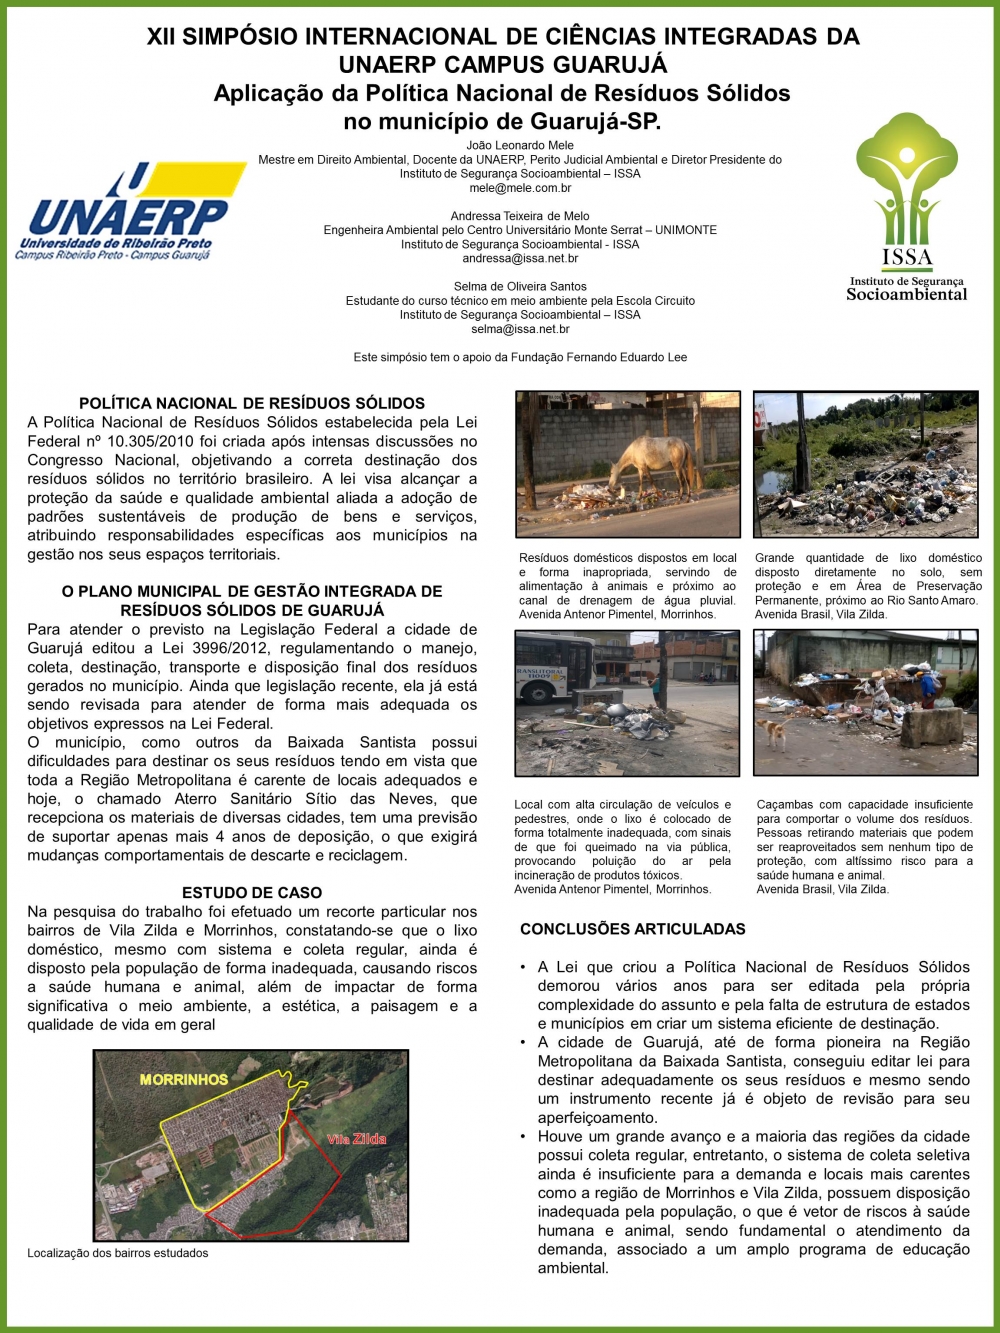 Aplicação da Política Nacional de Resíduos Sólidos no município de Guarujá-SP